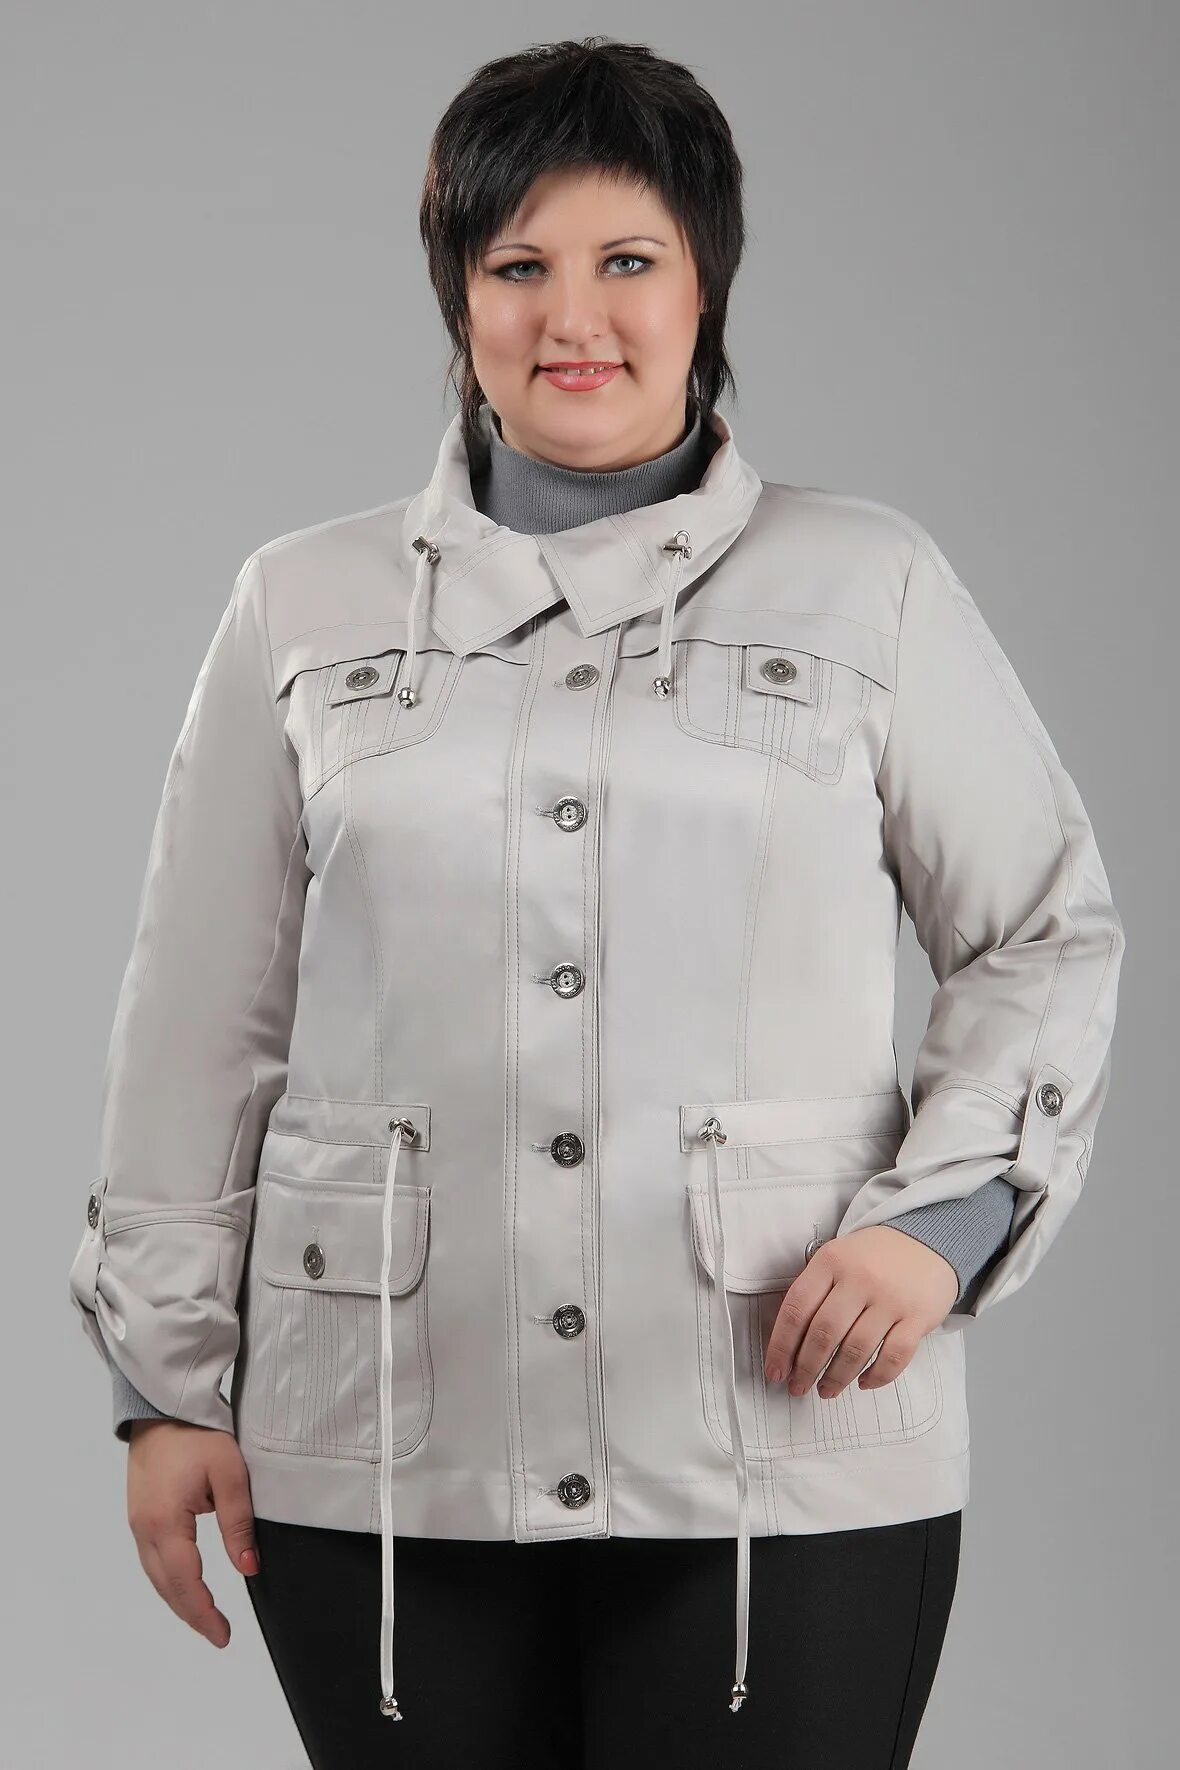 Куртки женские 50 лет. Куртка демисезонная женская 54 размер Баттерфляй. Валберис куртки размер 68-70 женские демисезонные. Куртки для пожилых женщин.